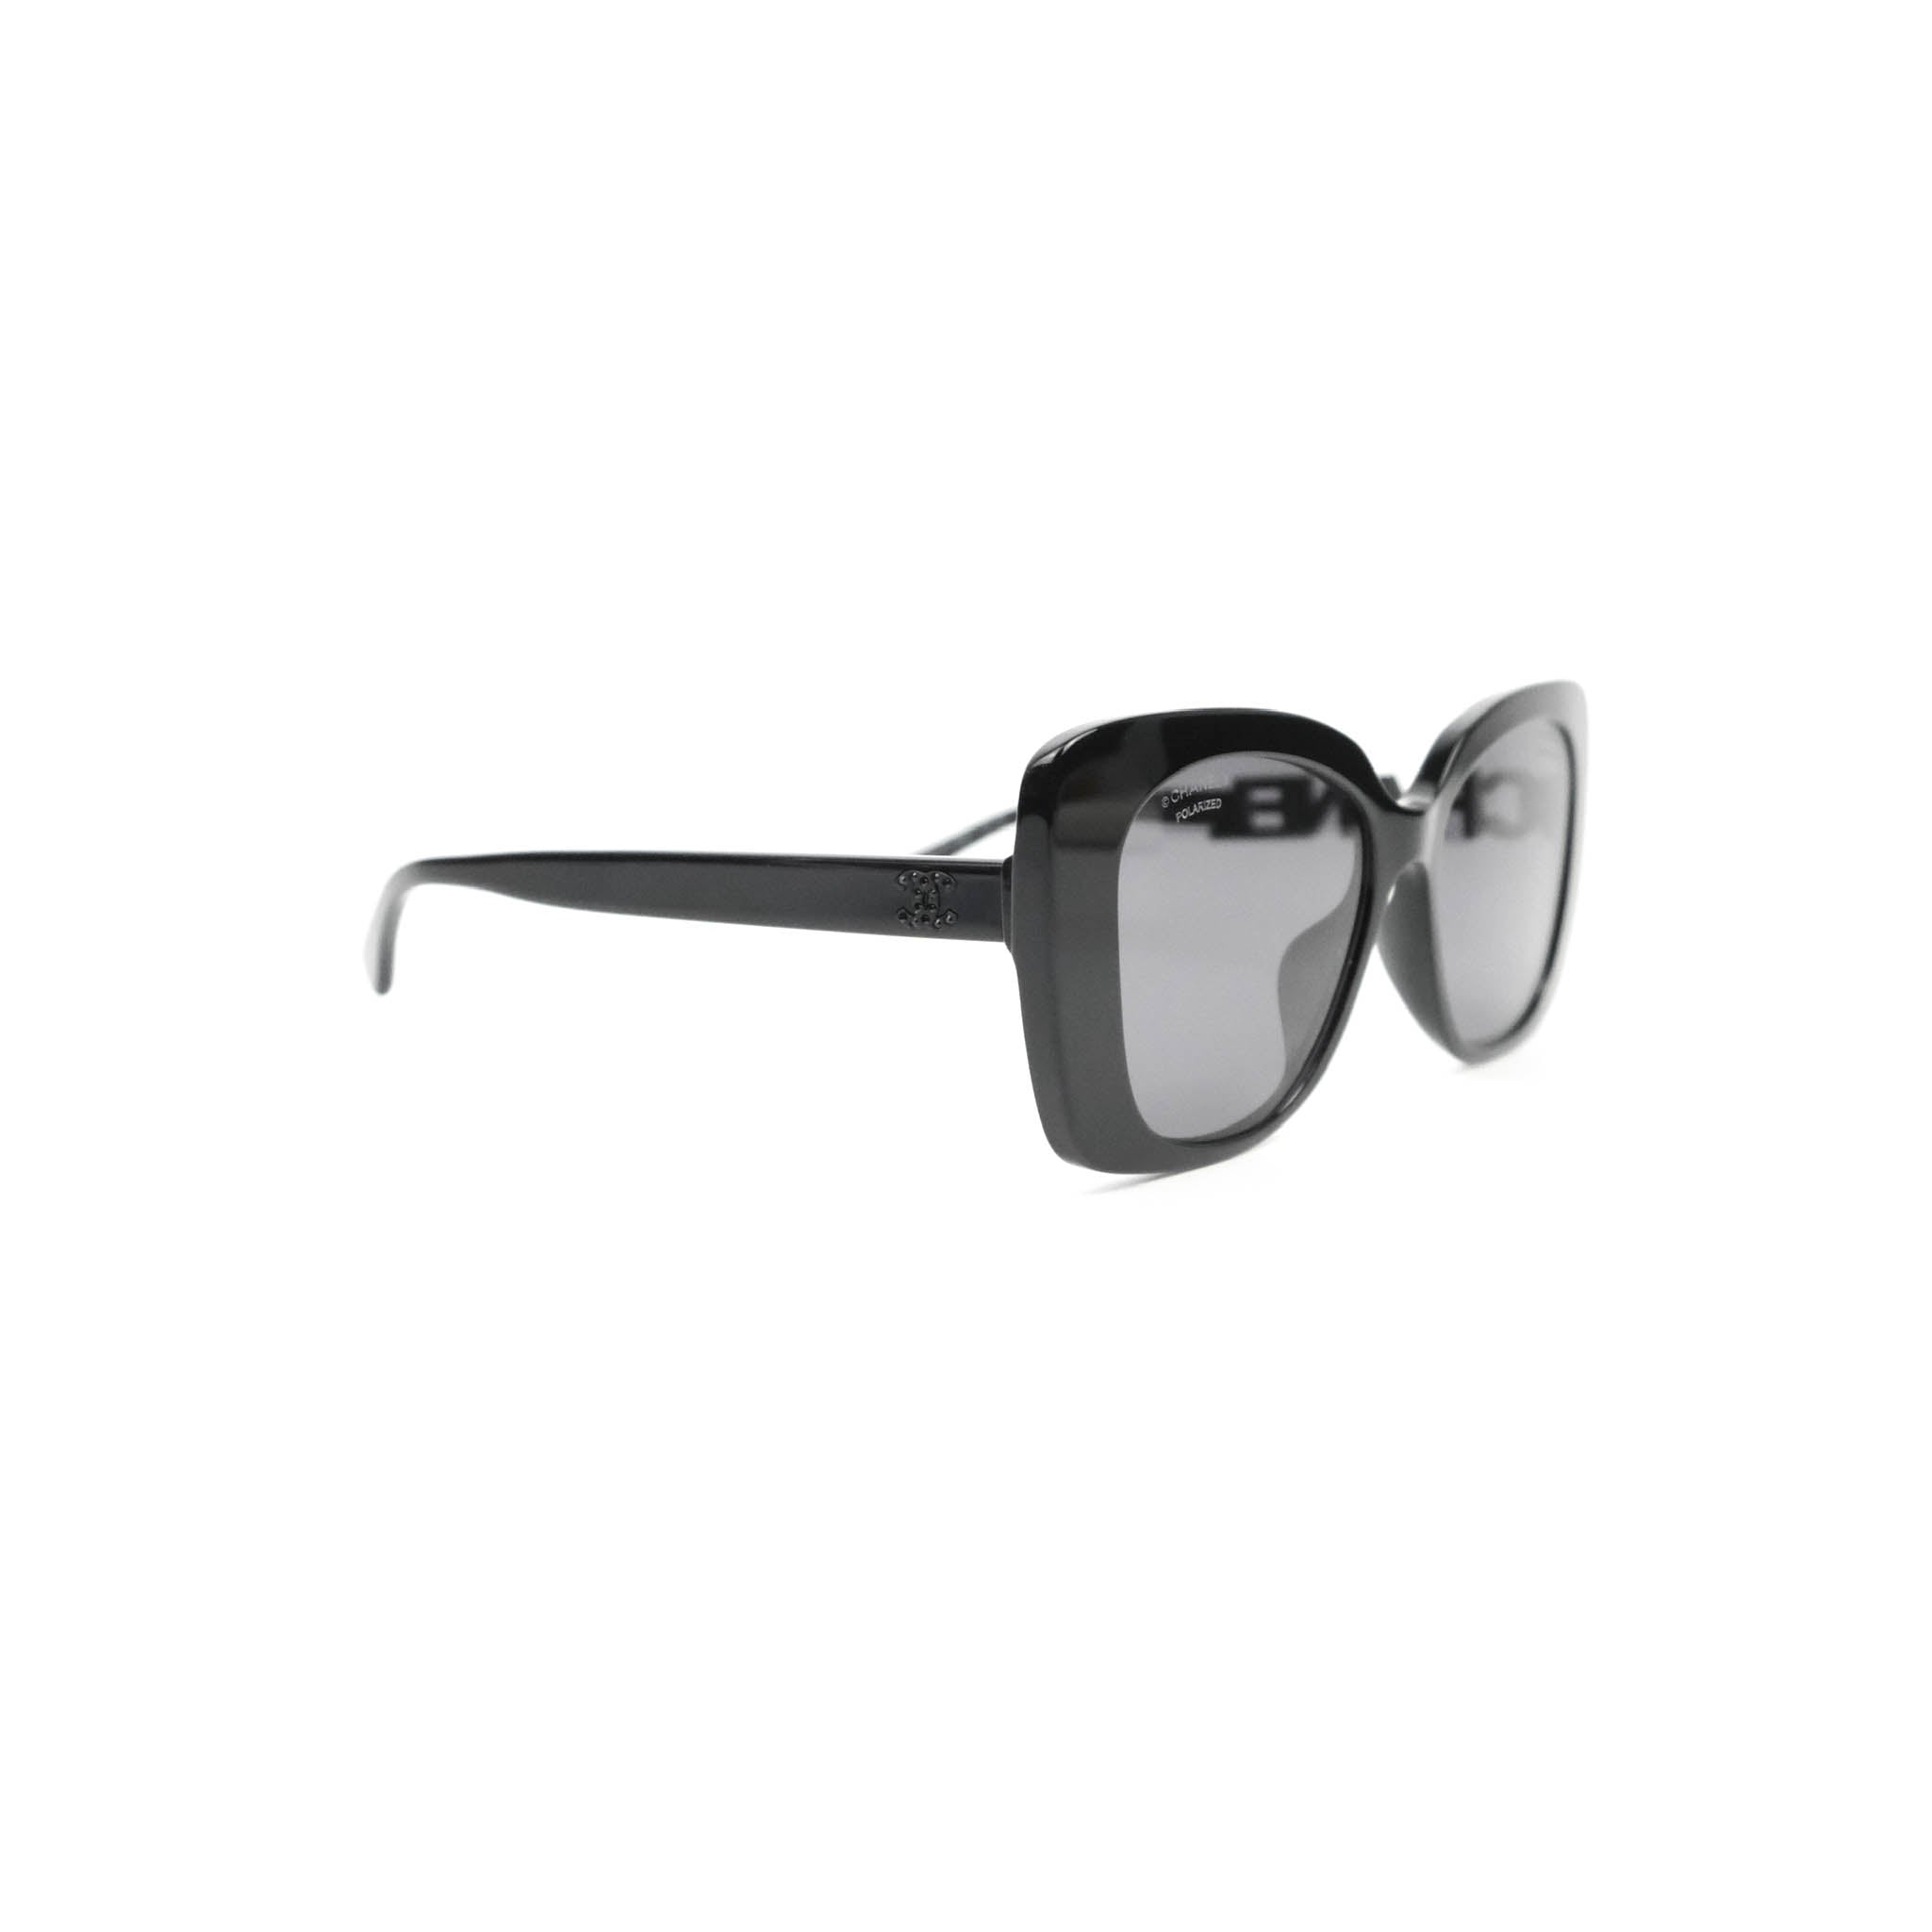 Chanel Square Sunglasses CH5380 56 Grey  Black Polarised Sunglasses   Sunglass Hut Australia